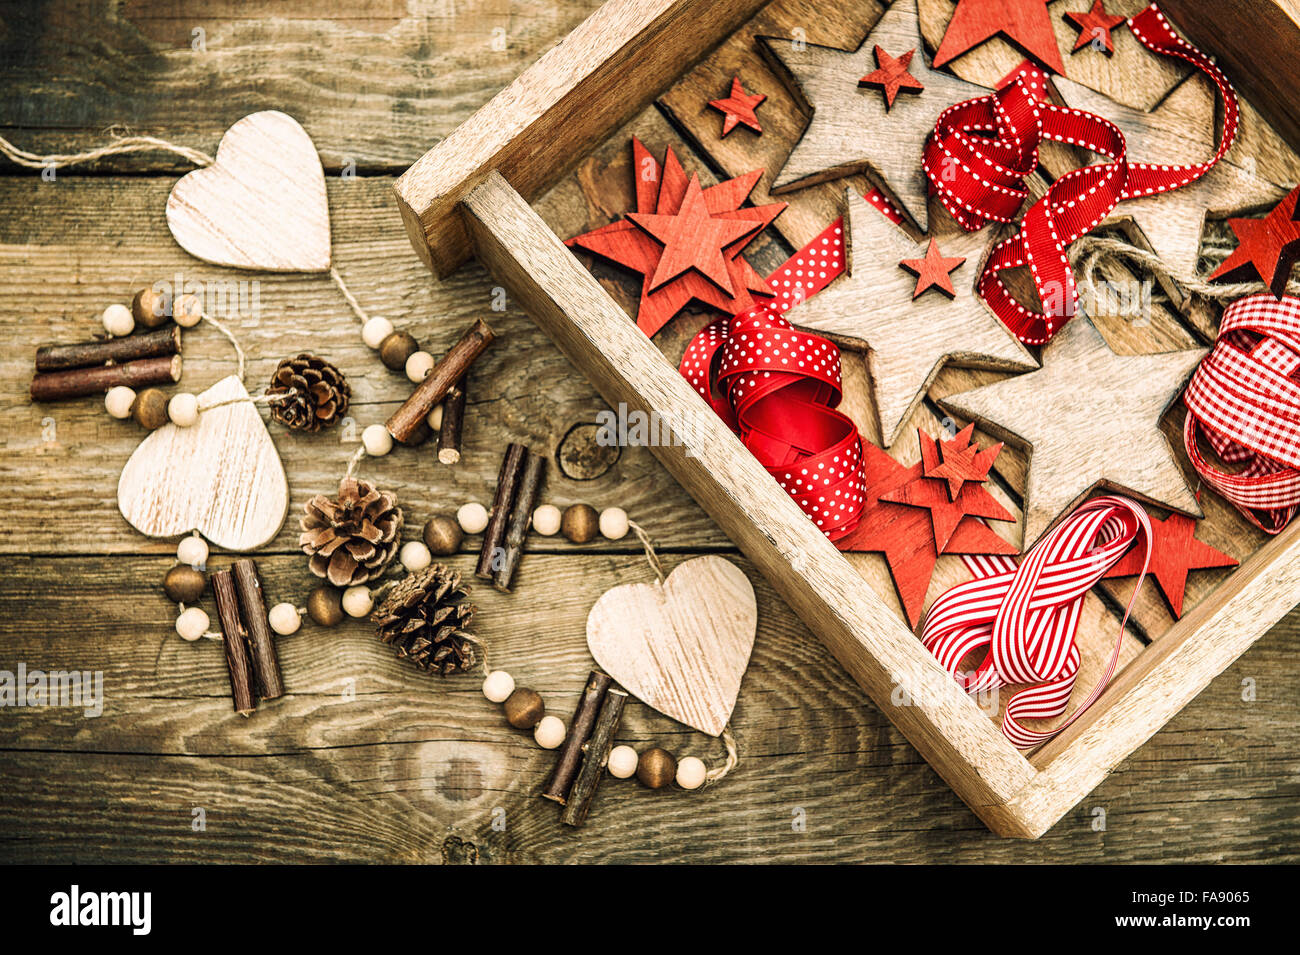 Weihnachtssterne Dekorationen aus Holz und roten Bändern. Nostalgisches Retro-Stil dunkel getönten Bild Stockfoto